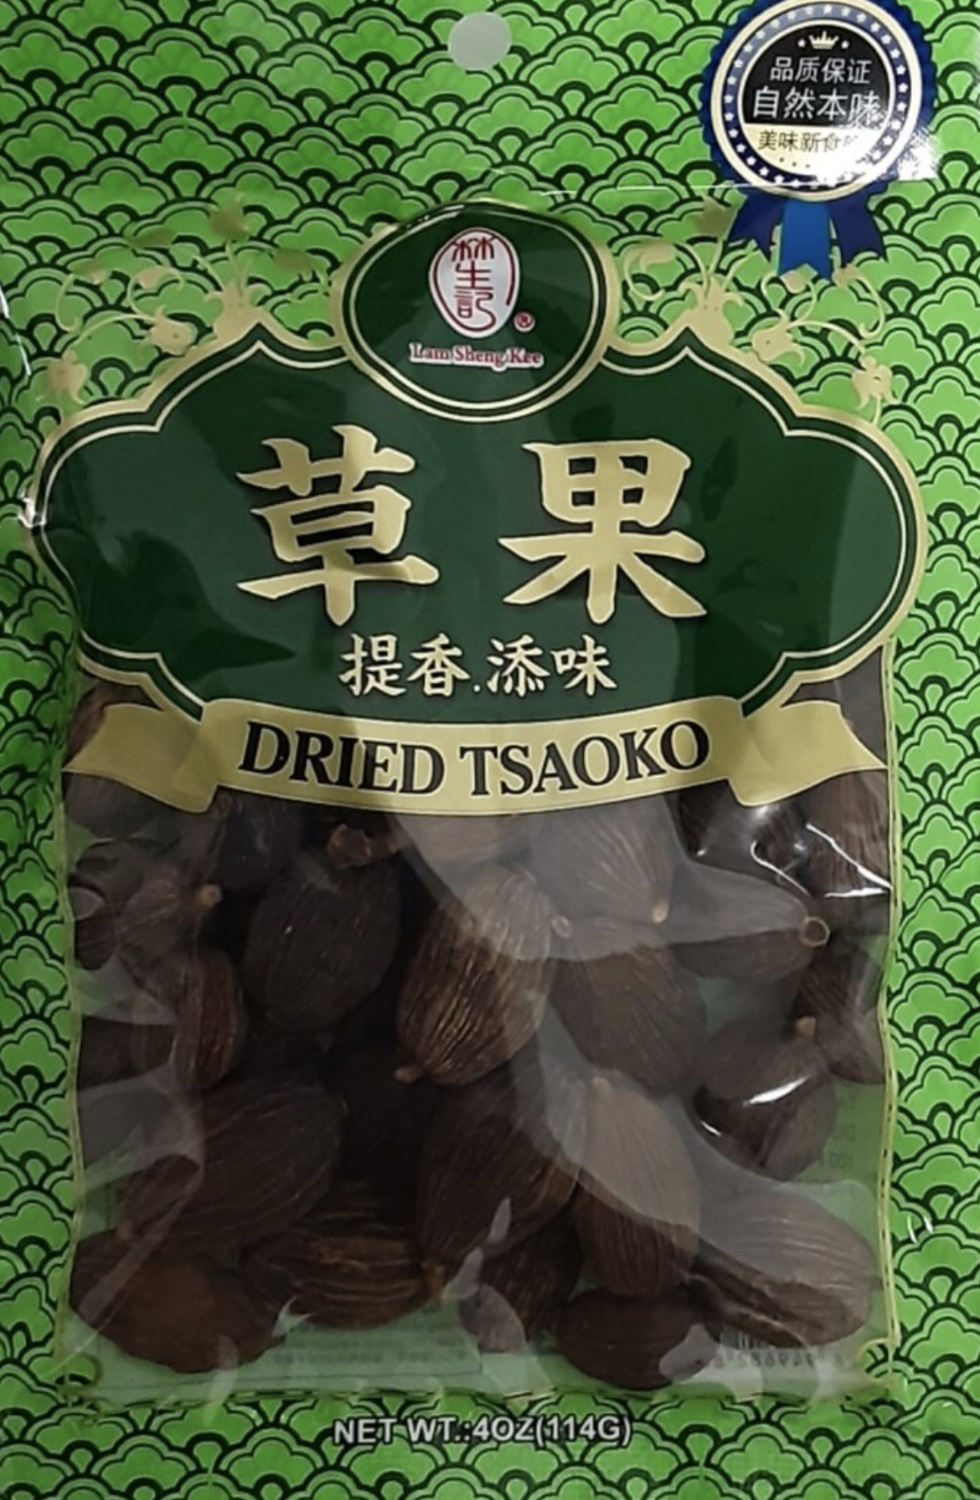 林生记草果 Lam Sheng Kee Dried Tsaoko 114g (4 oz)